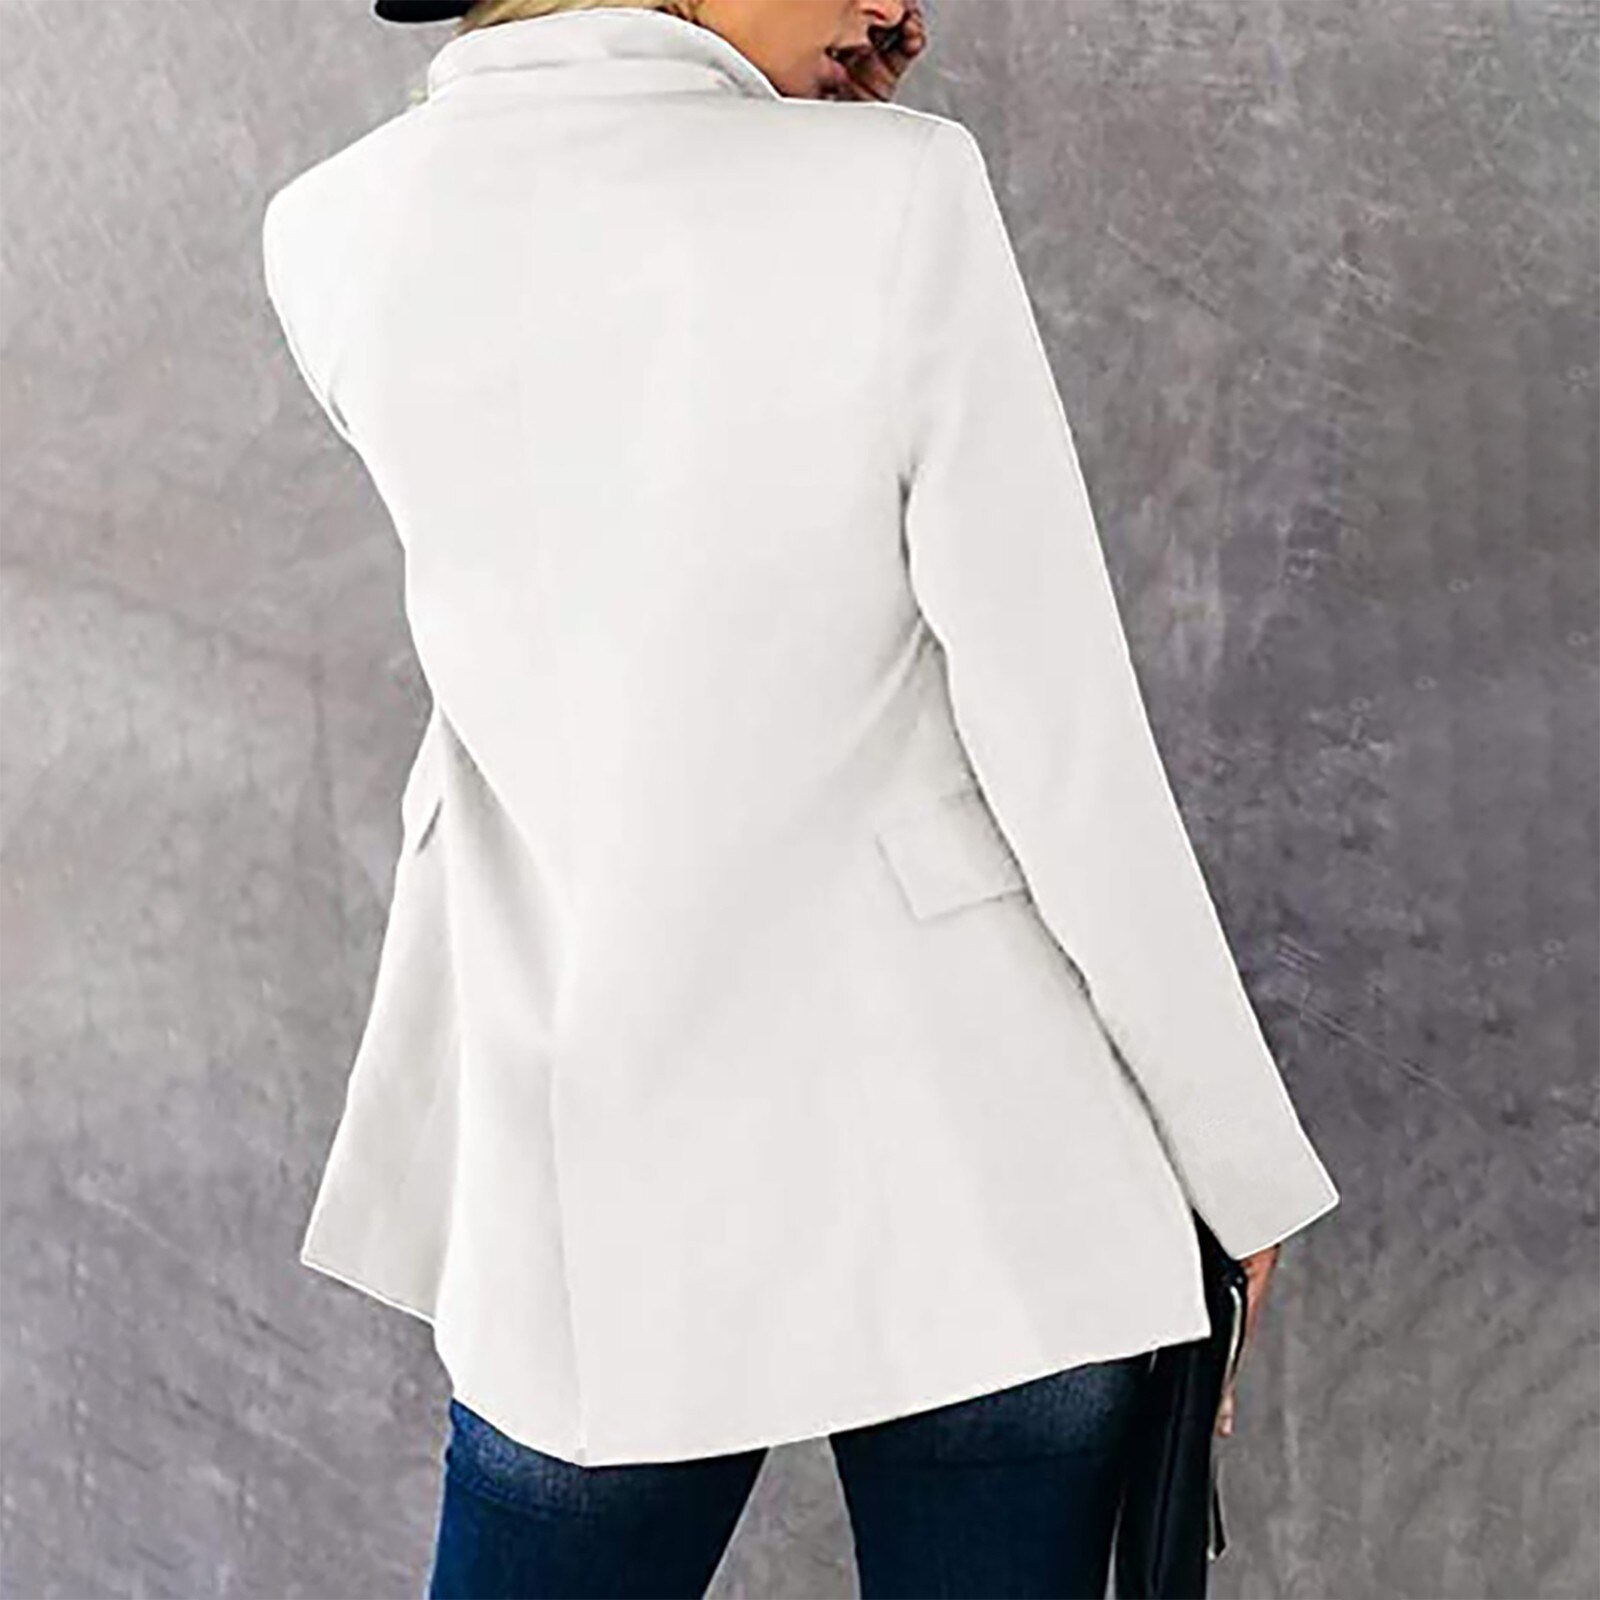 여성 캐주얼 경량 얇은 재킷 슬림 코트 긴 소매 블레이저 사무실 비즈니스 코트 재킷, 여성 트렌치 코트